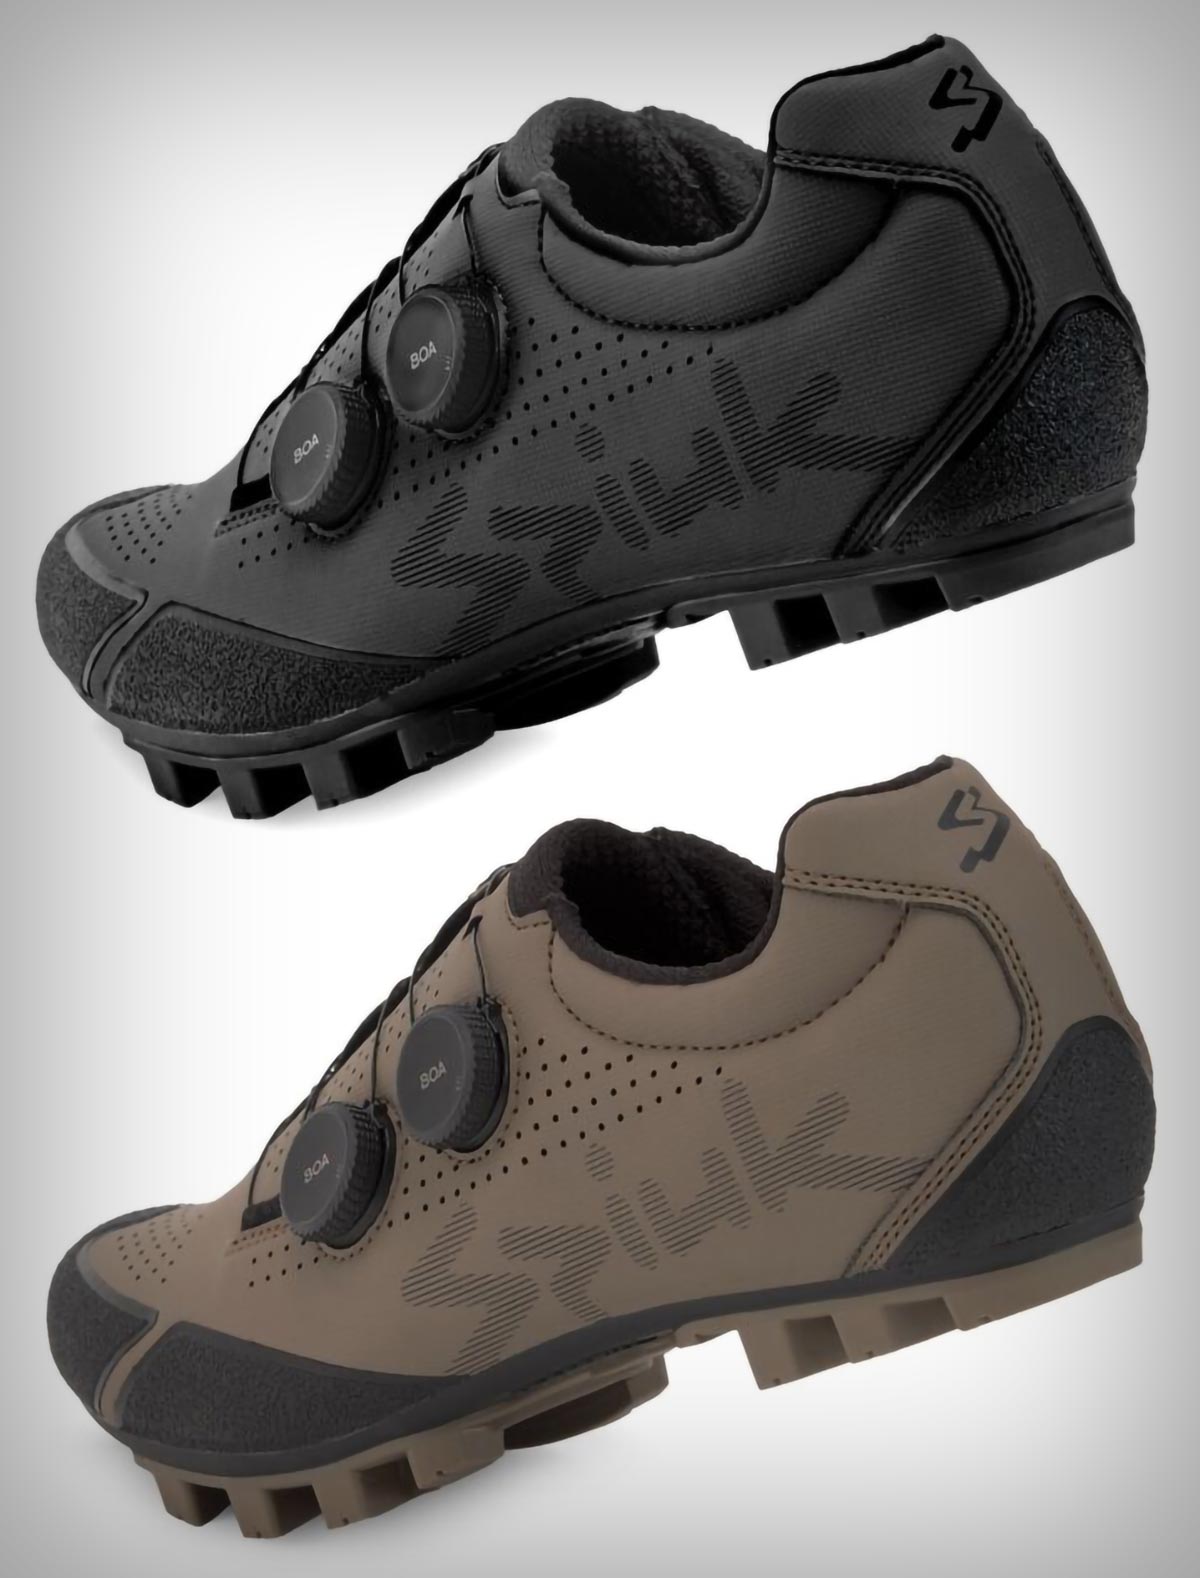 Spiuk Loma Carbon, unas zapatillas optimizadas para gravel con suela de carbono y doble sistema BOA de ajuste